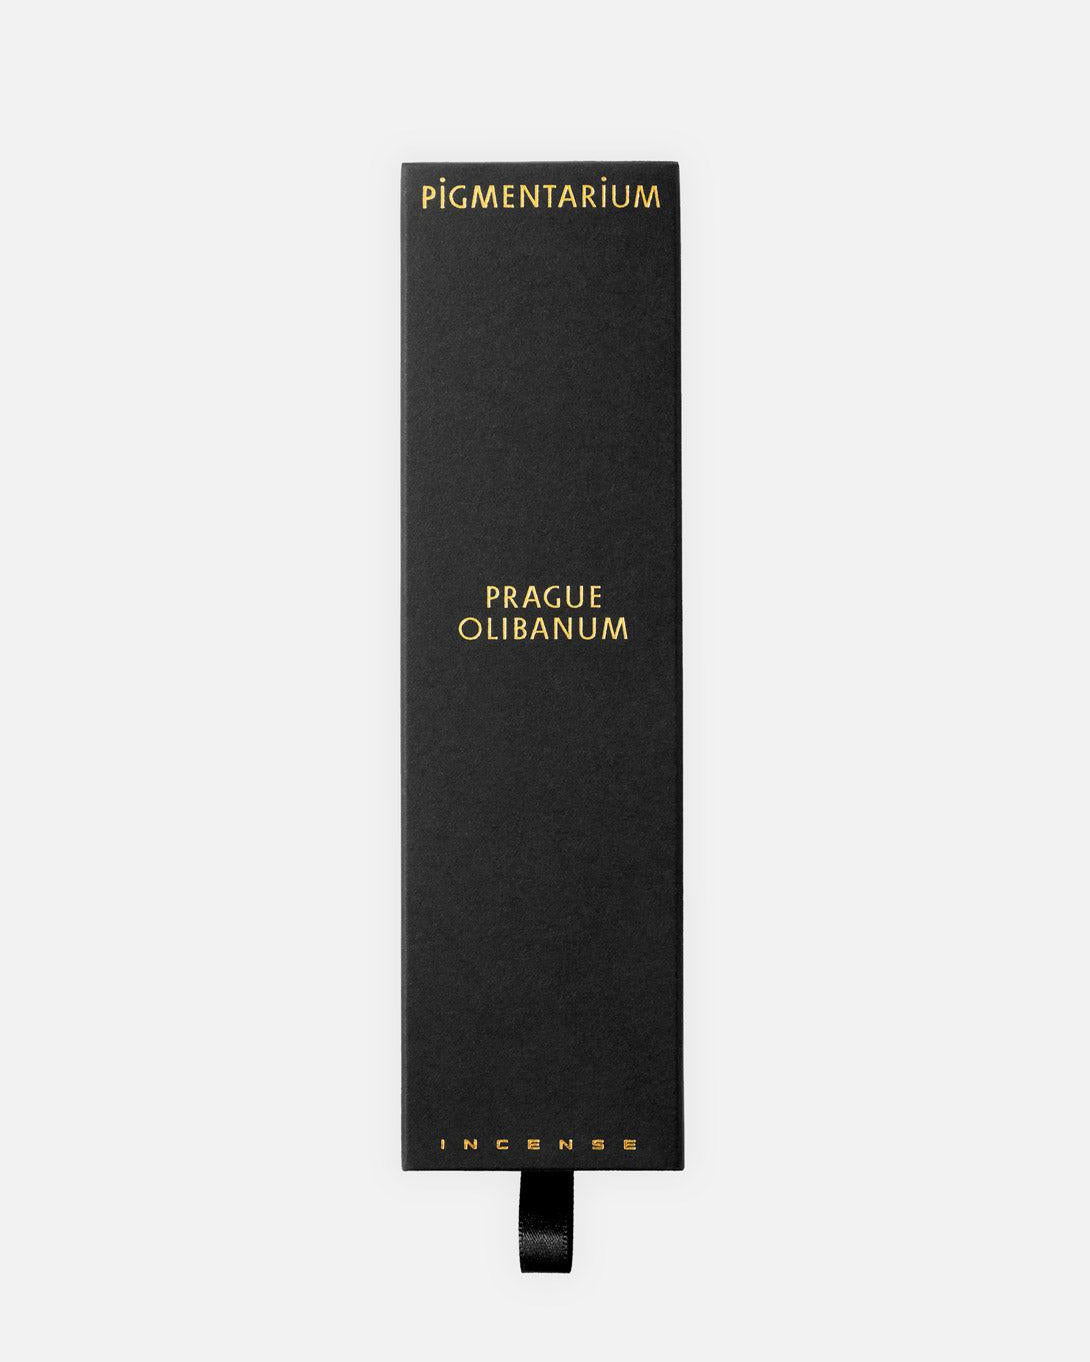 Prague Olibanum incense sticks - Incense - Pigmentarium - Elevastor